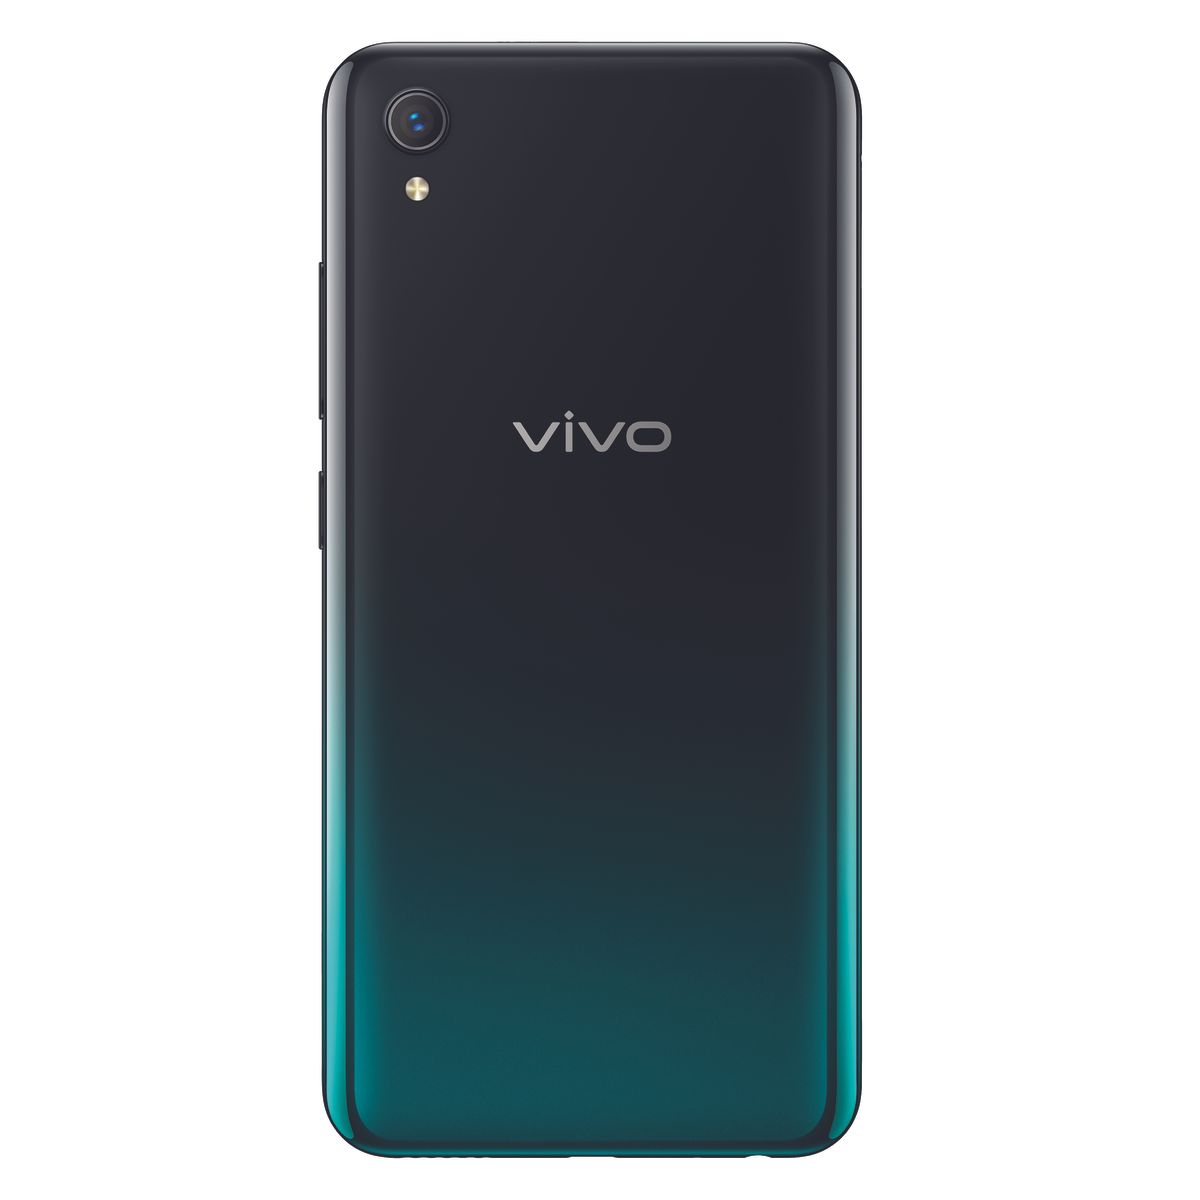 Vivo V20 SE price in India leaked by premature online retailer listings | TechRadar